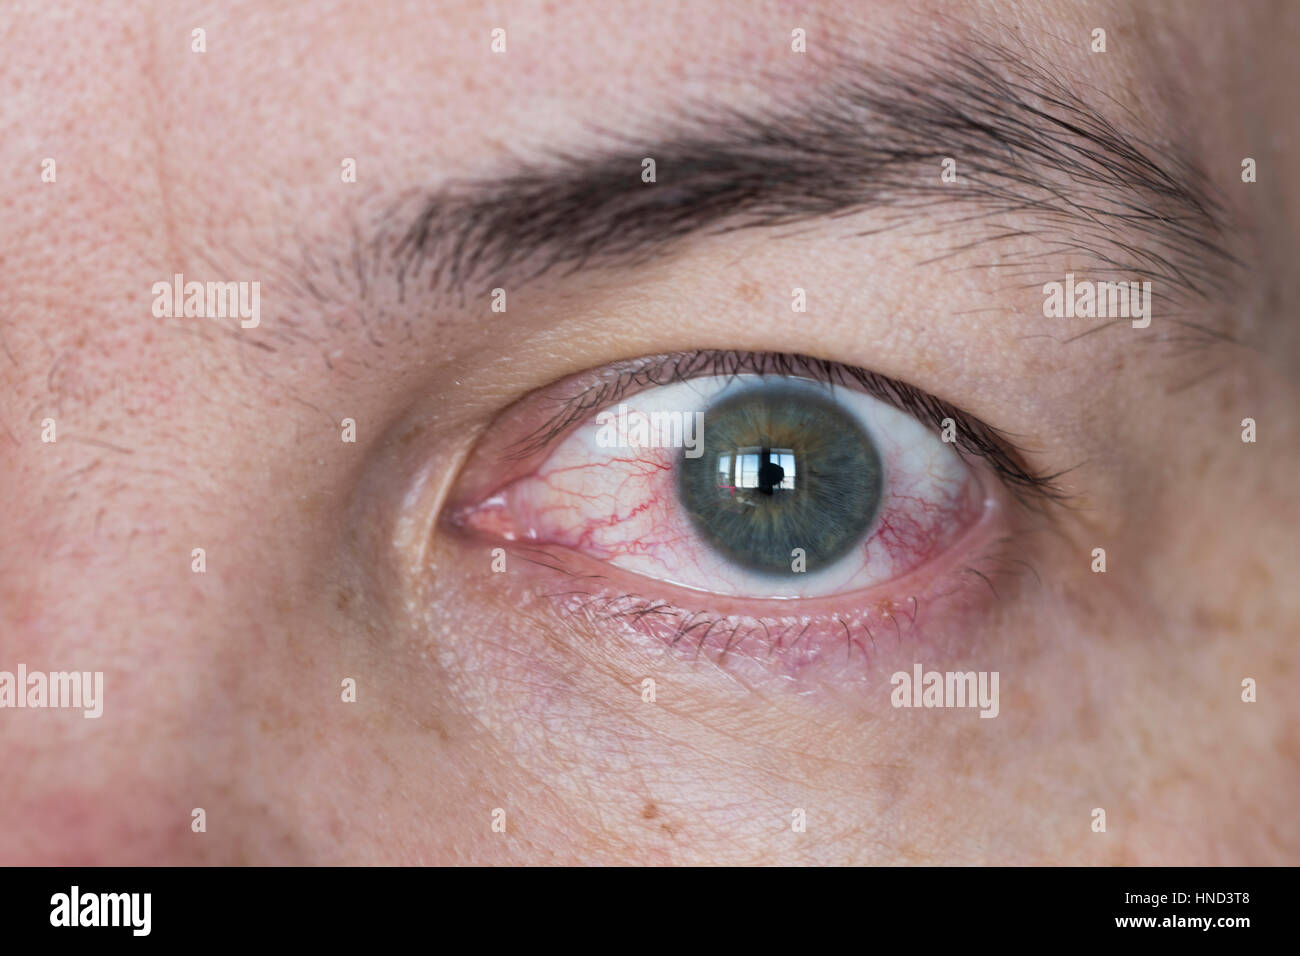 Nahaufnahme von weiten, offenen rote und gereizte Augen Stockfotografie -  Alamy